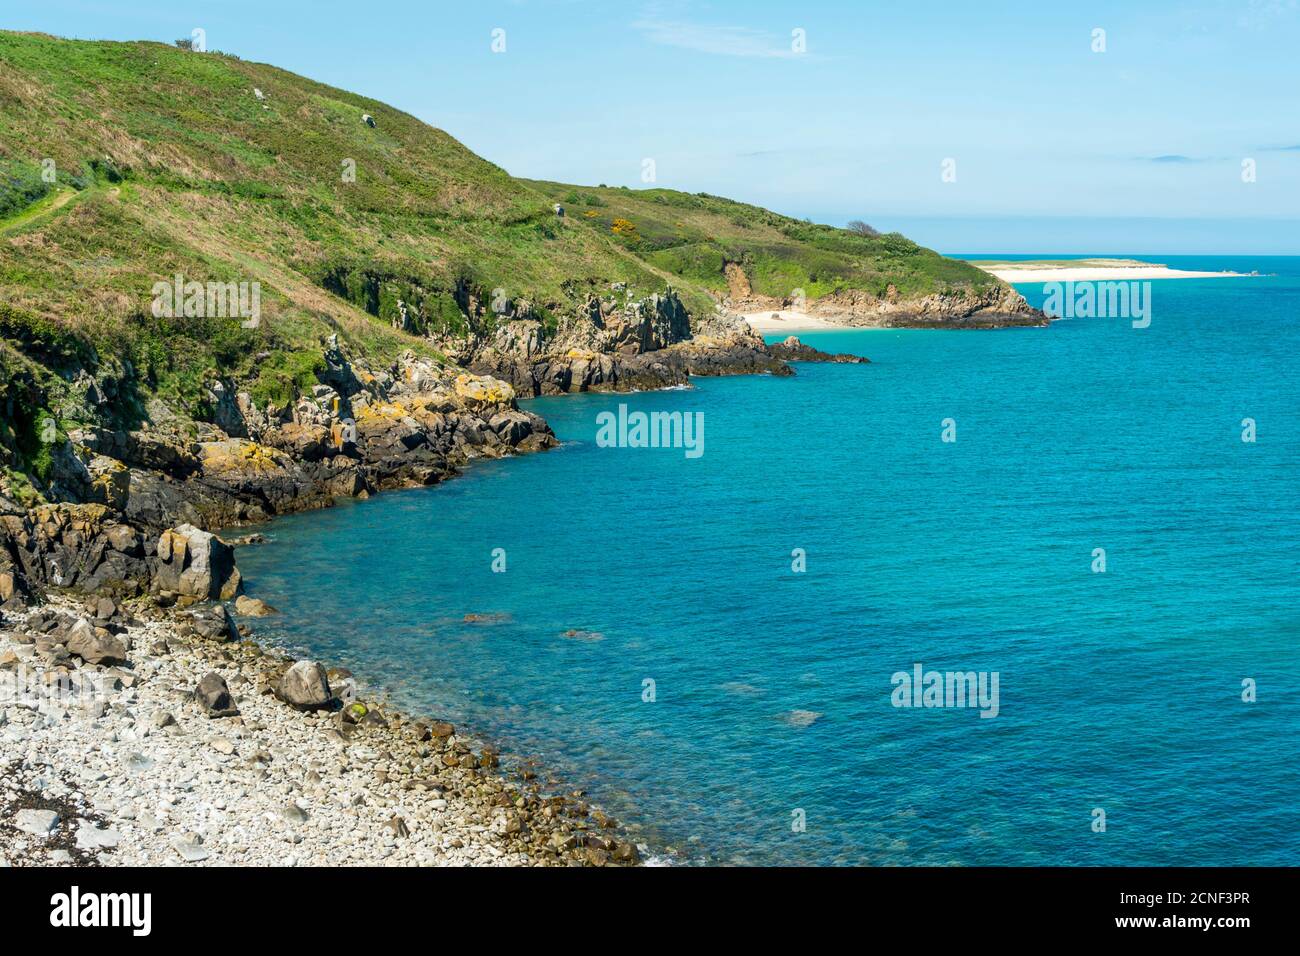 Vista della costa orientale dell'isola di Herm, tra cui Belvoir Bay e la distante Shell Beach. Guernsey, Isole del canale, Regno Unito. Foto Stock